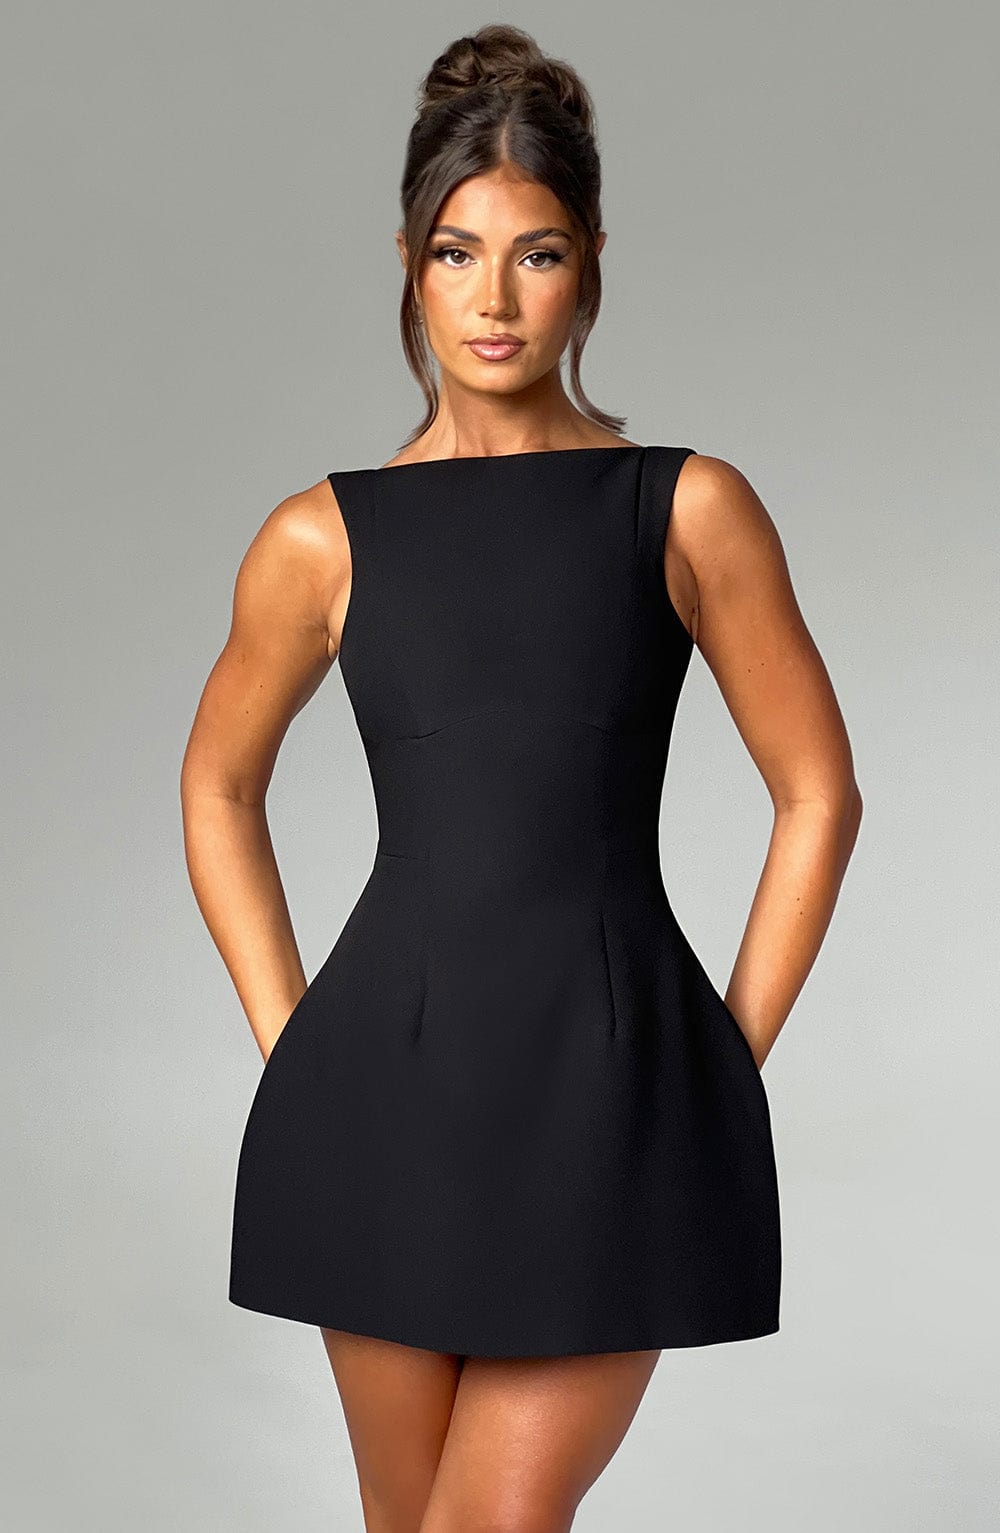 Alana Mini Dress - Black